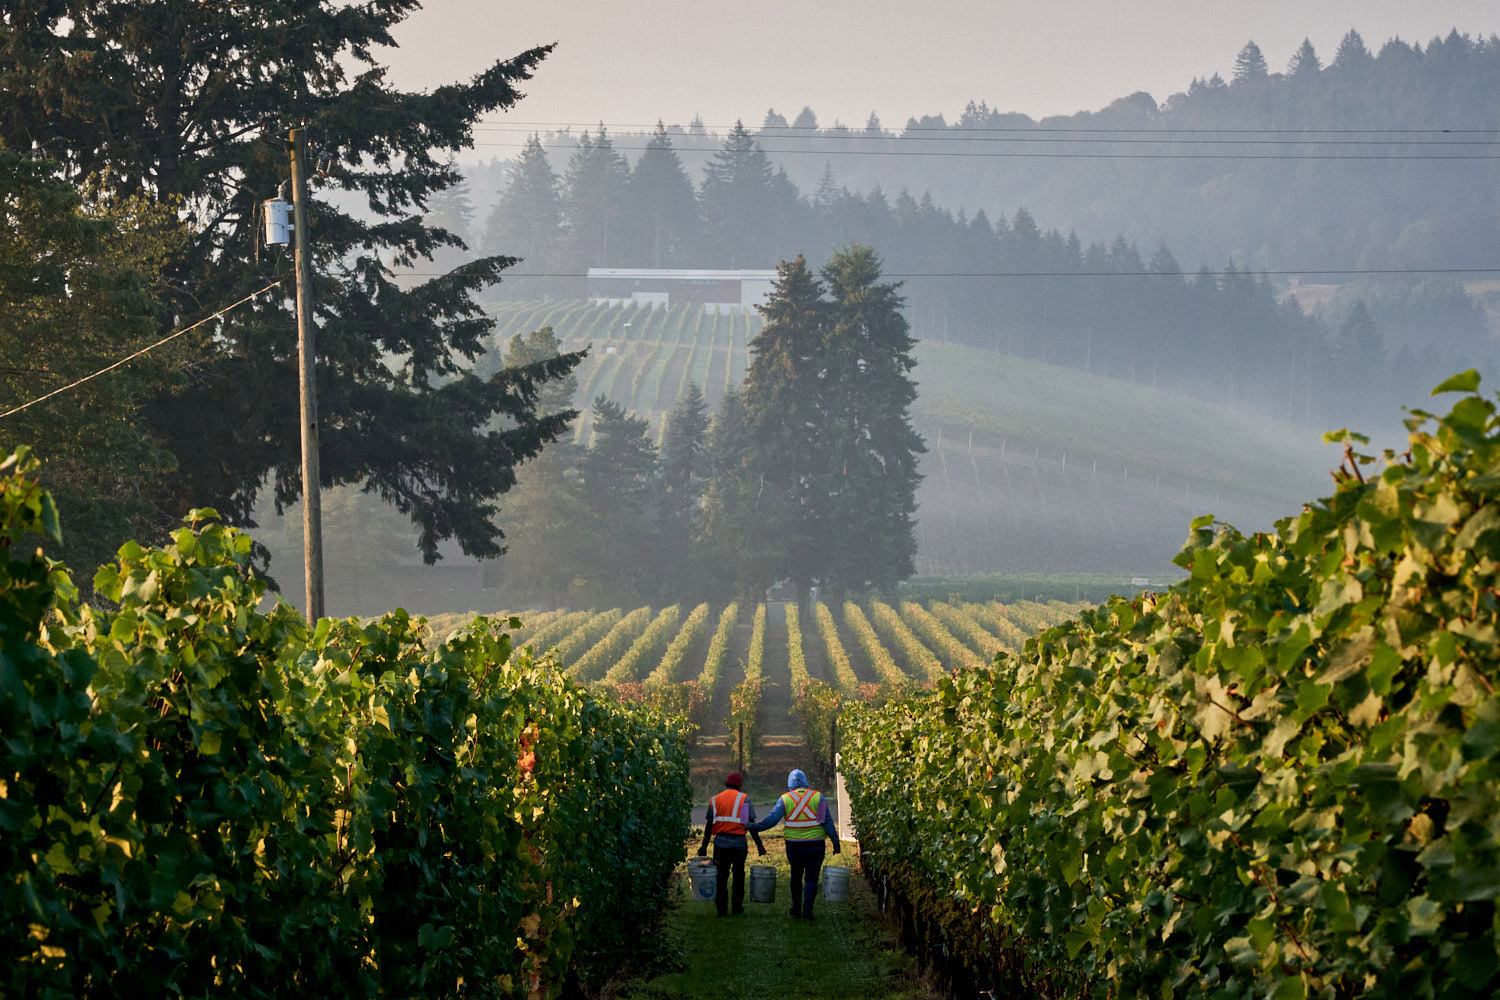 Employees walking through vineyard